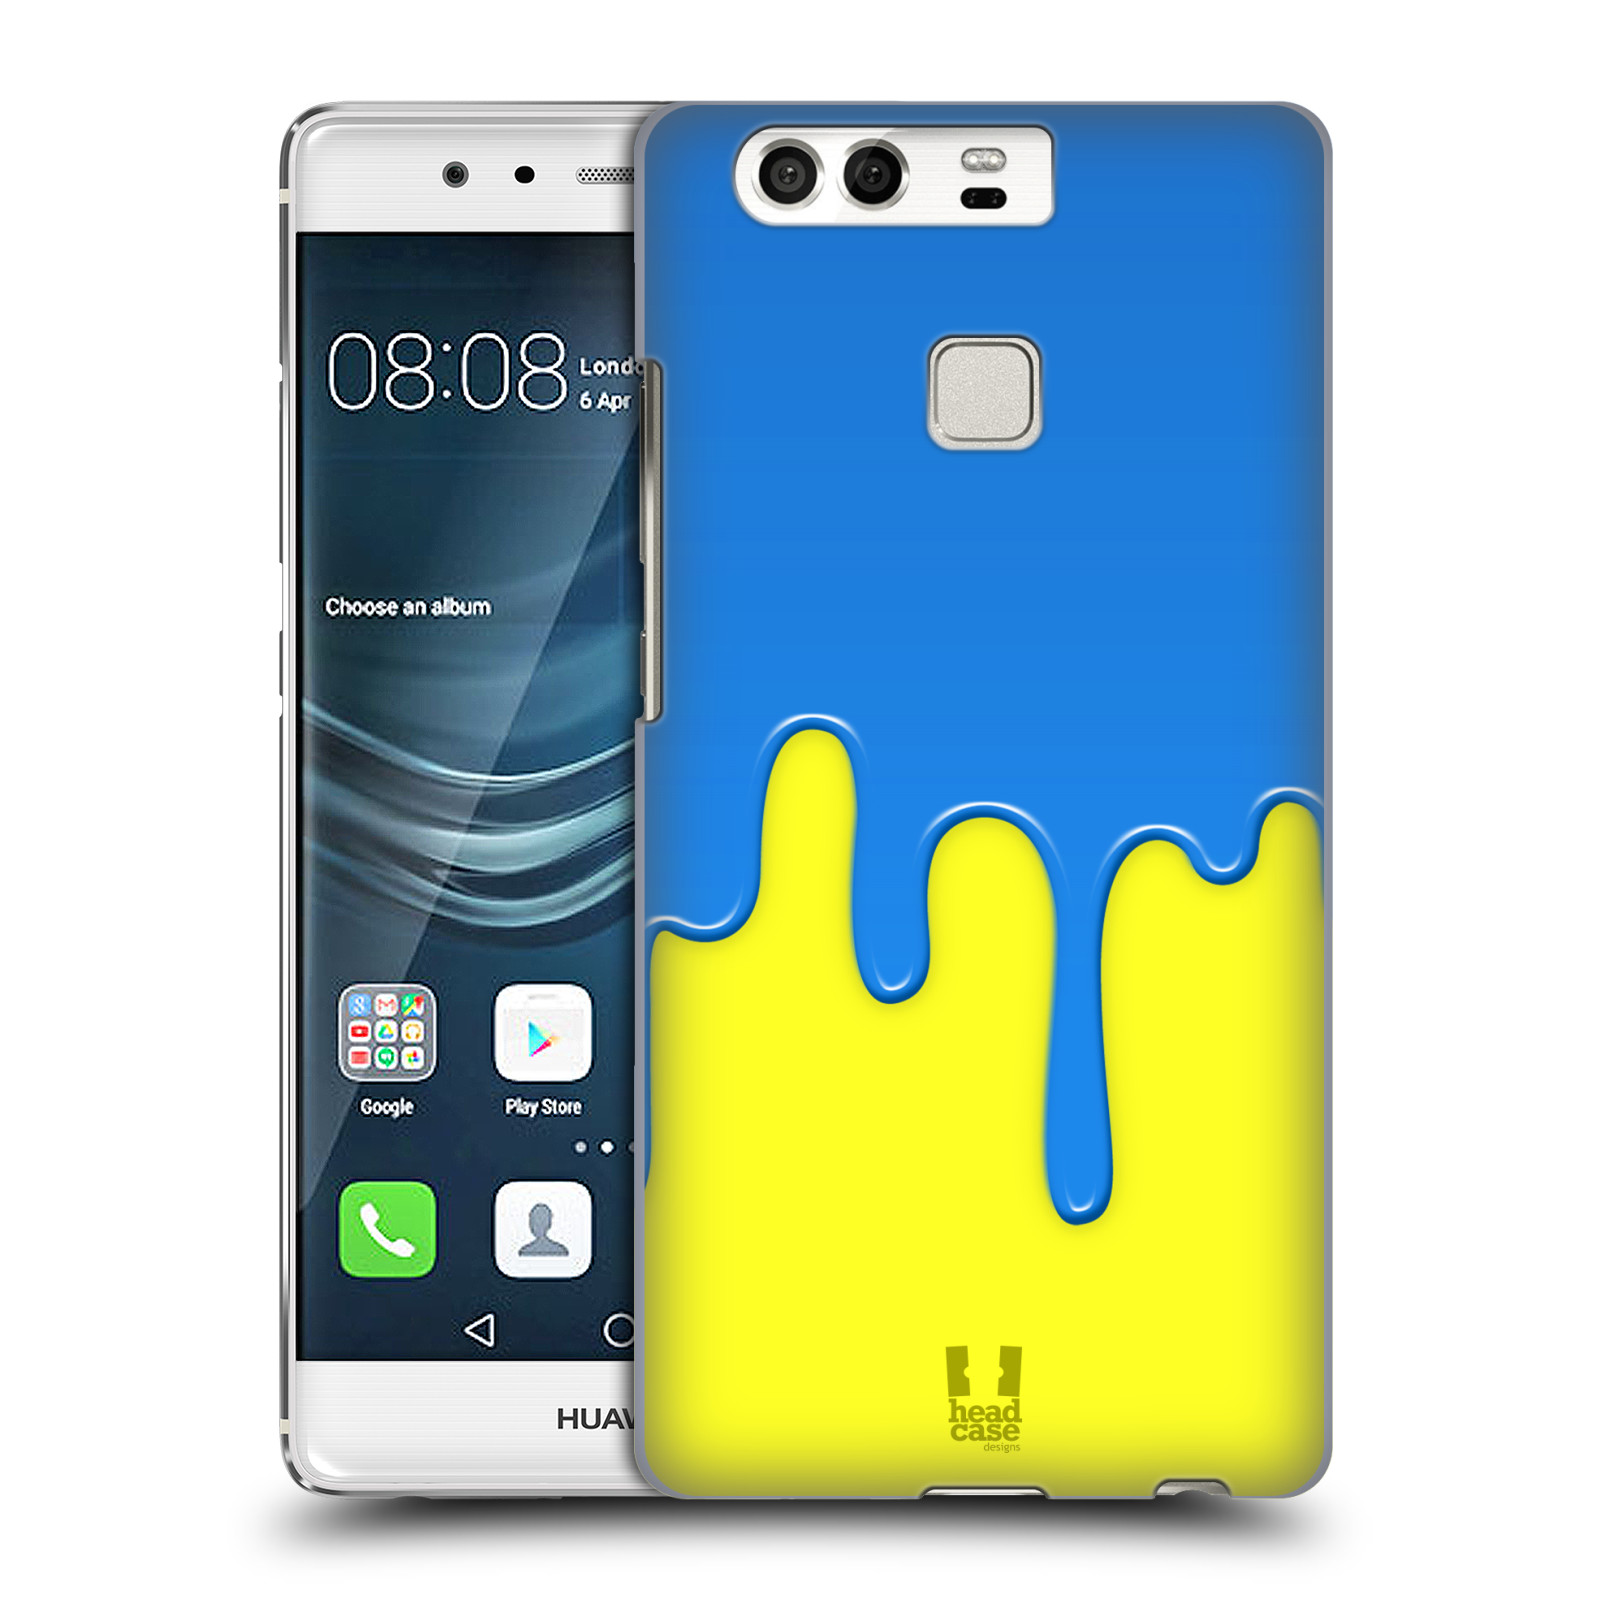 HEAD CASE plastový obal na mobil Huawei P9 / P9 DUAL SIM vzor Barevná záplava polovina MODRÁ ŽLUTÁ